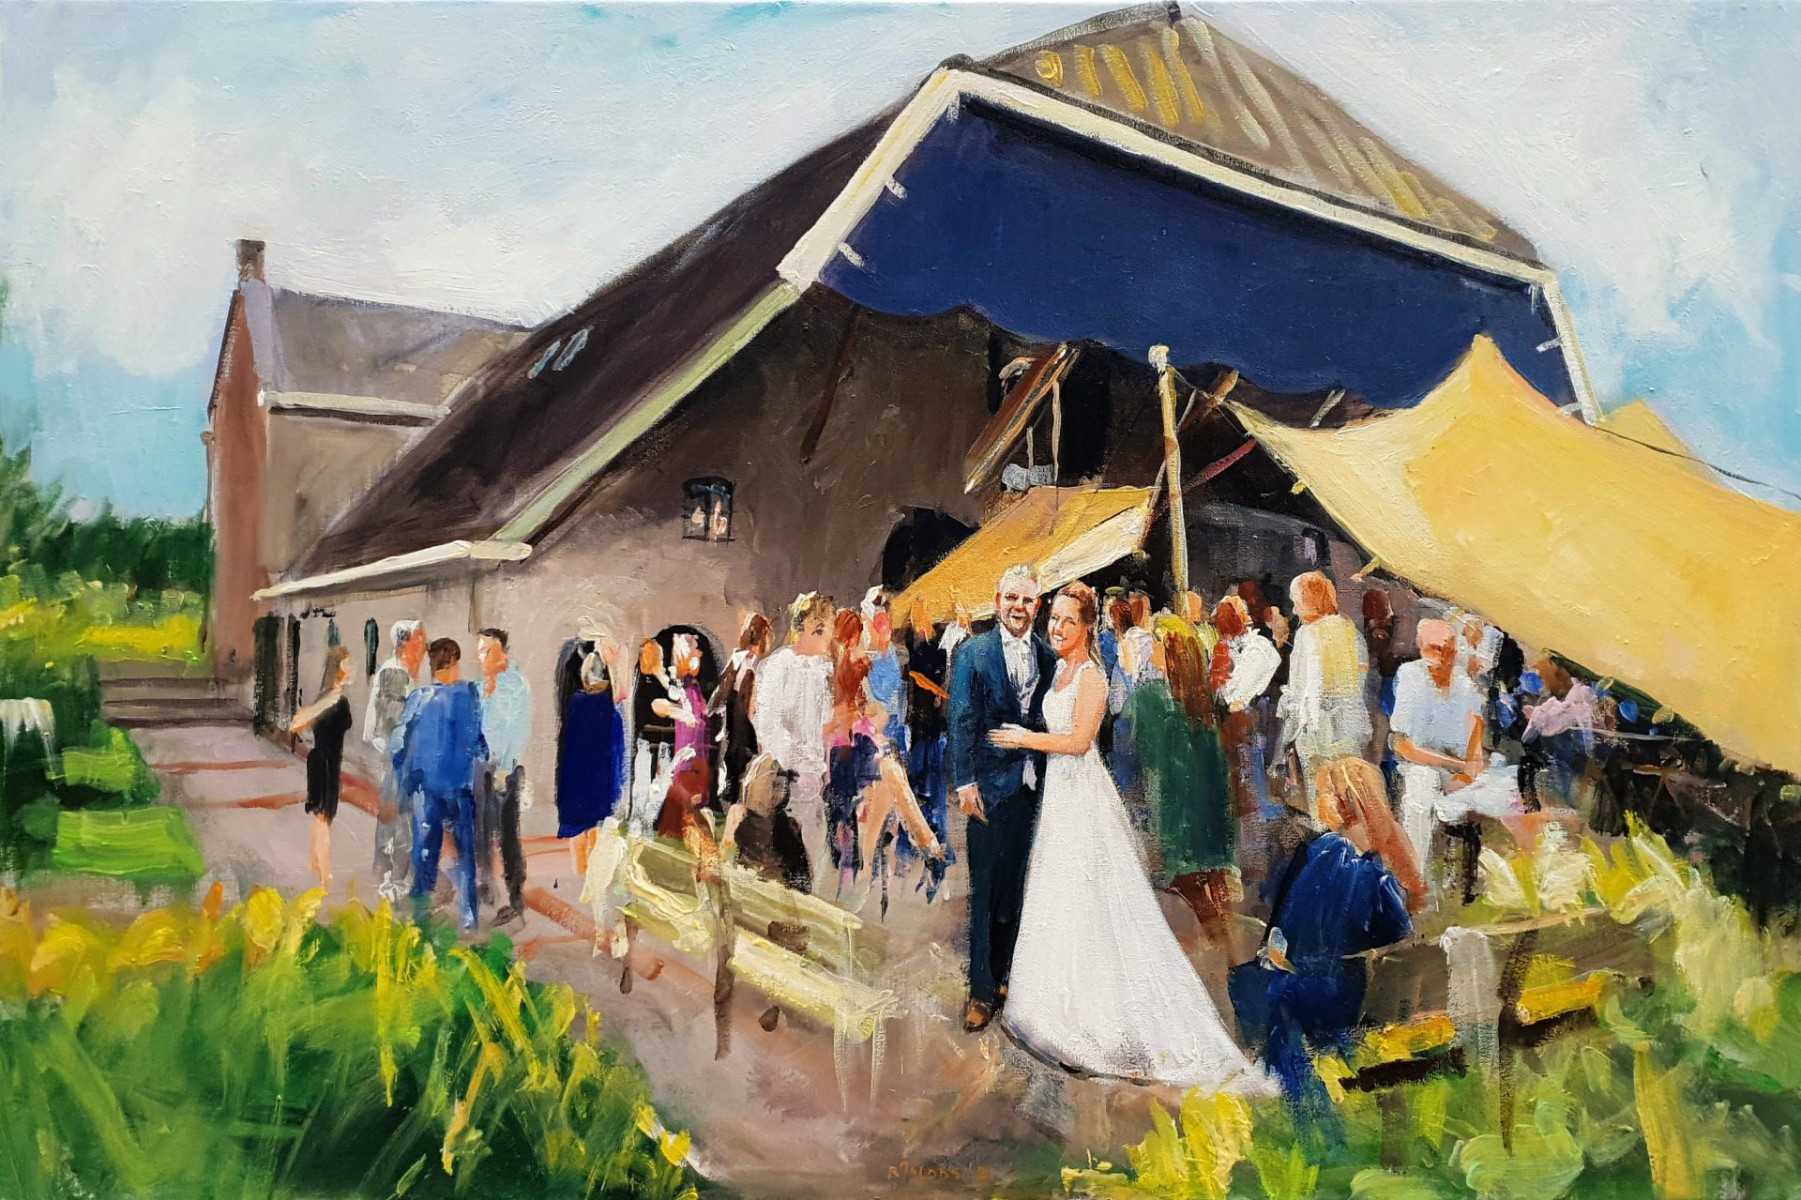 Rob Jacobs schildert doek van 80x120cm tijdens de bruiloft in Culemborg, Gelderland.